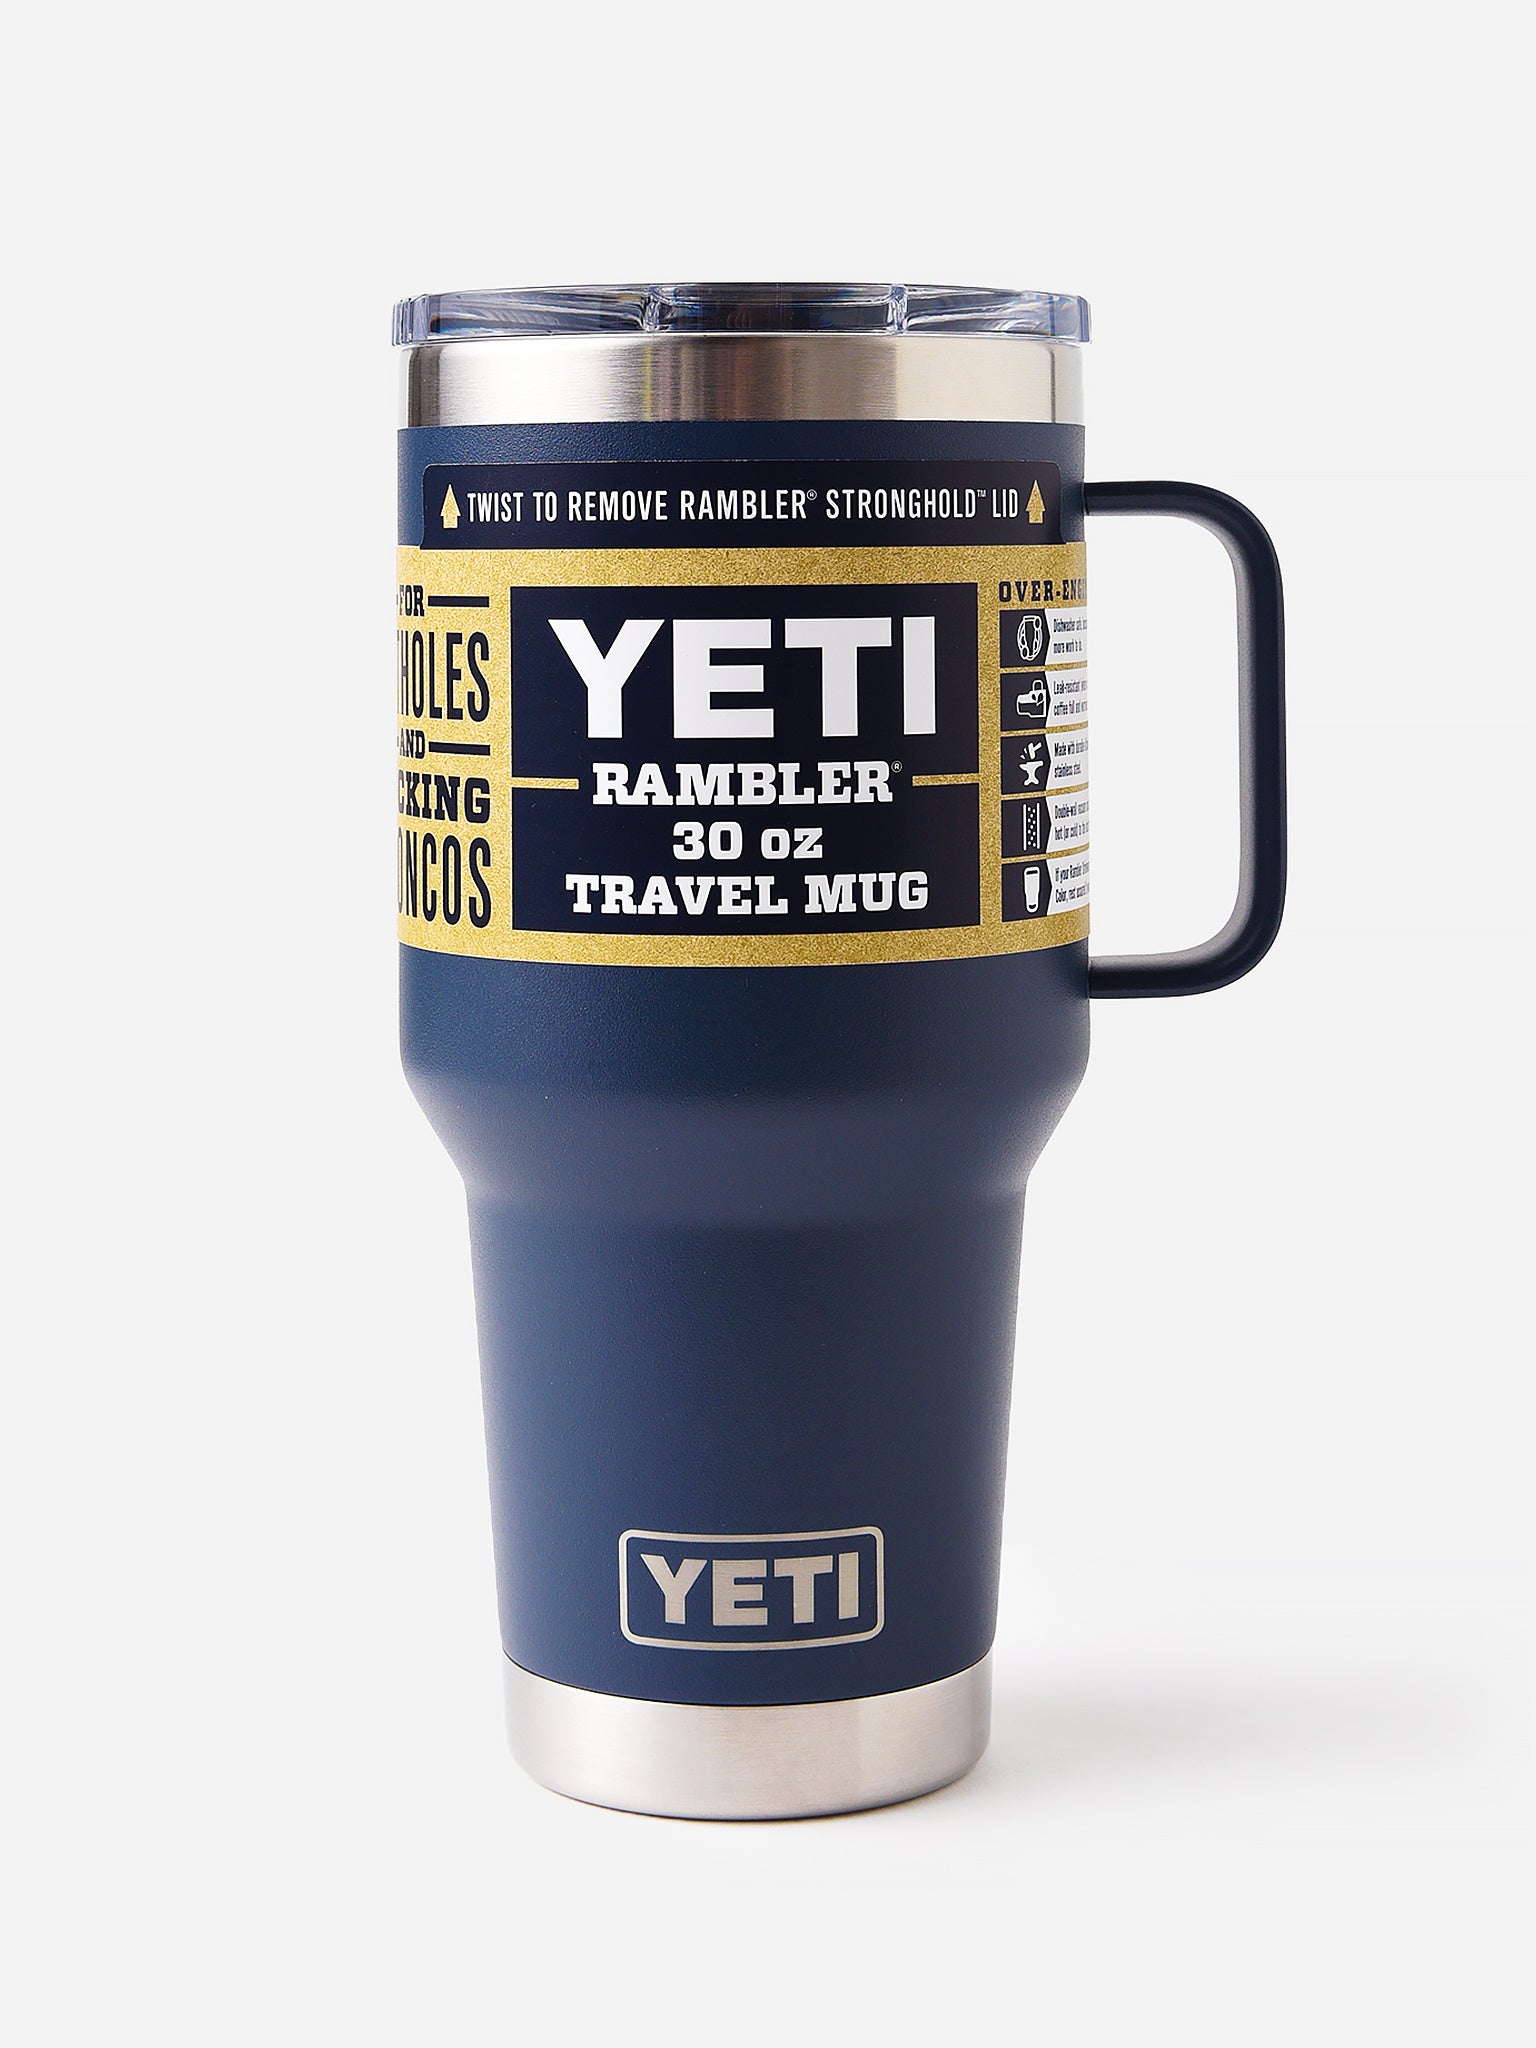 YETI 30 oz. Rambler Travel Mug with Stronghold Lid